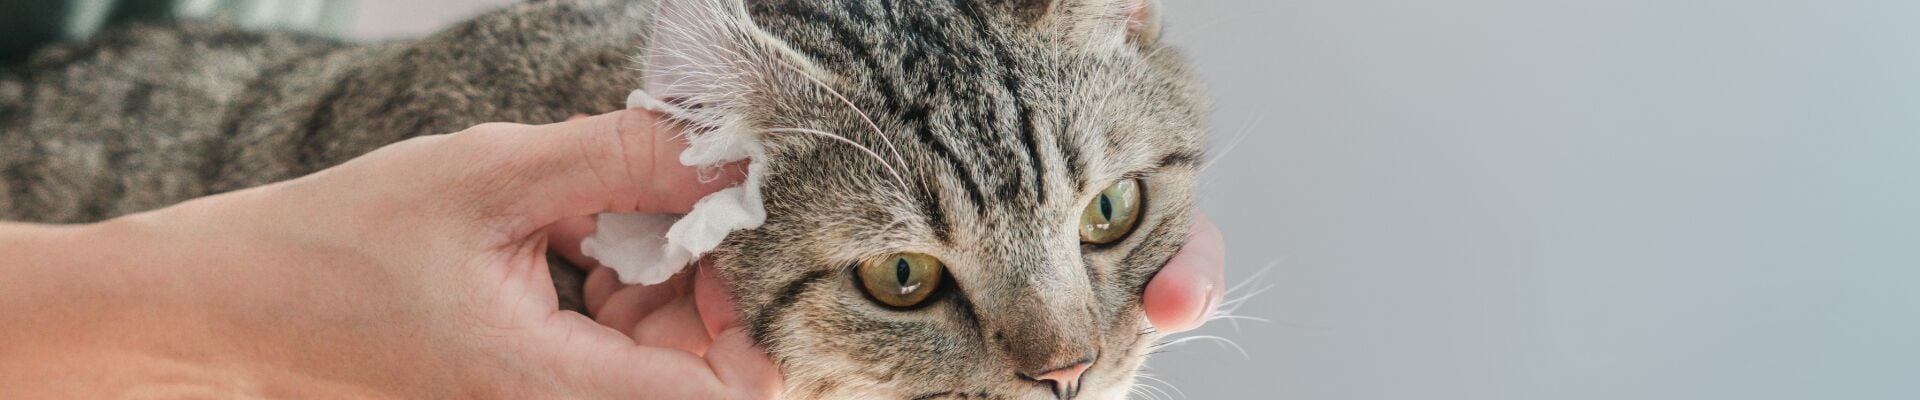 Una persona limpiando con un paño los oídos de un gato